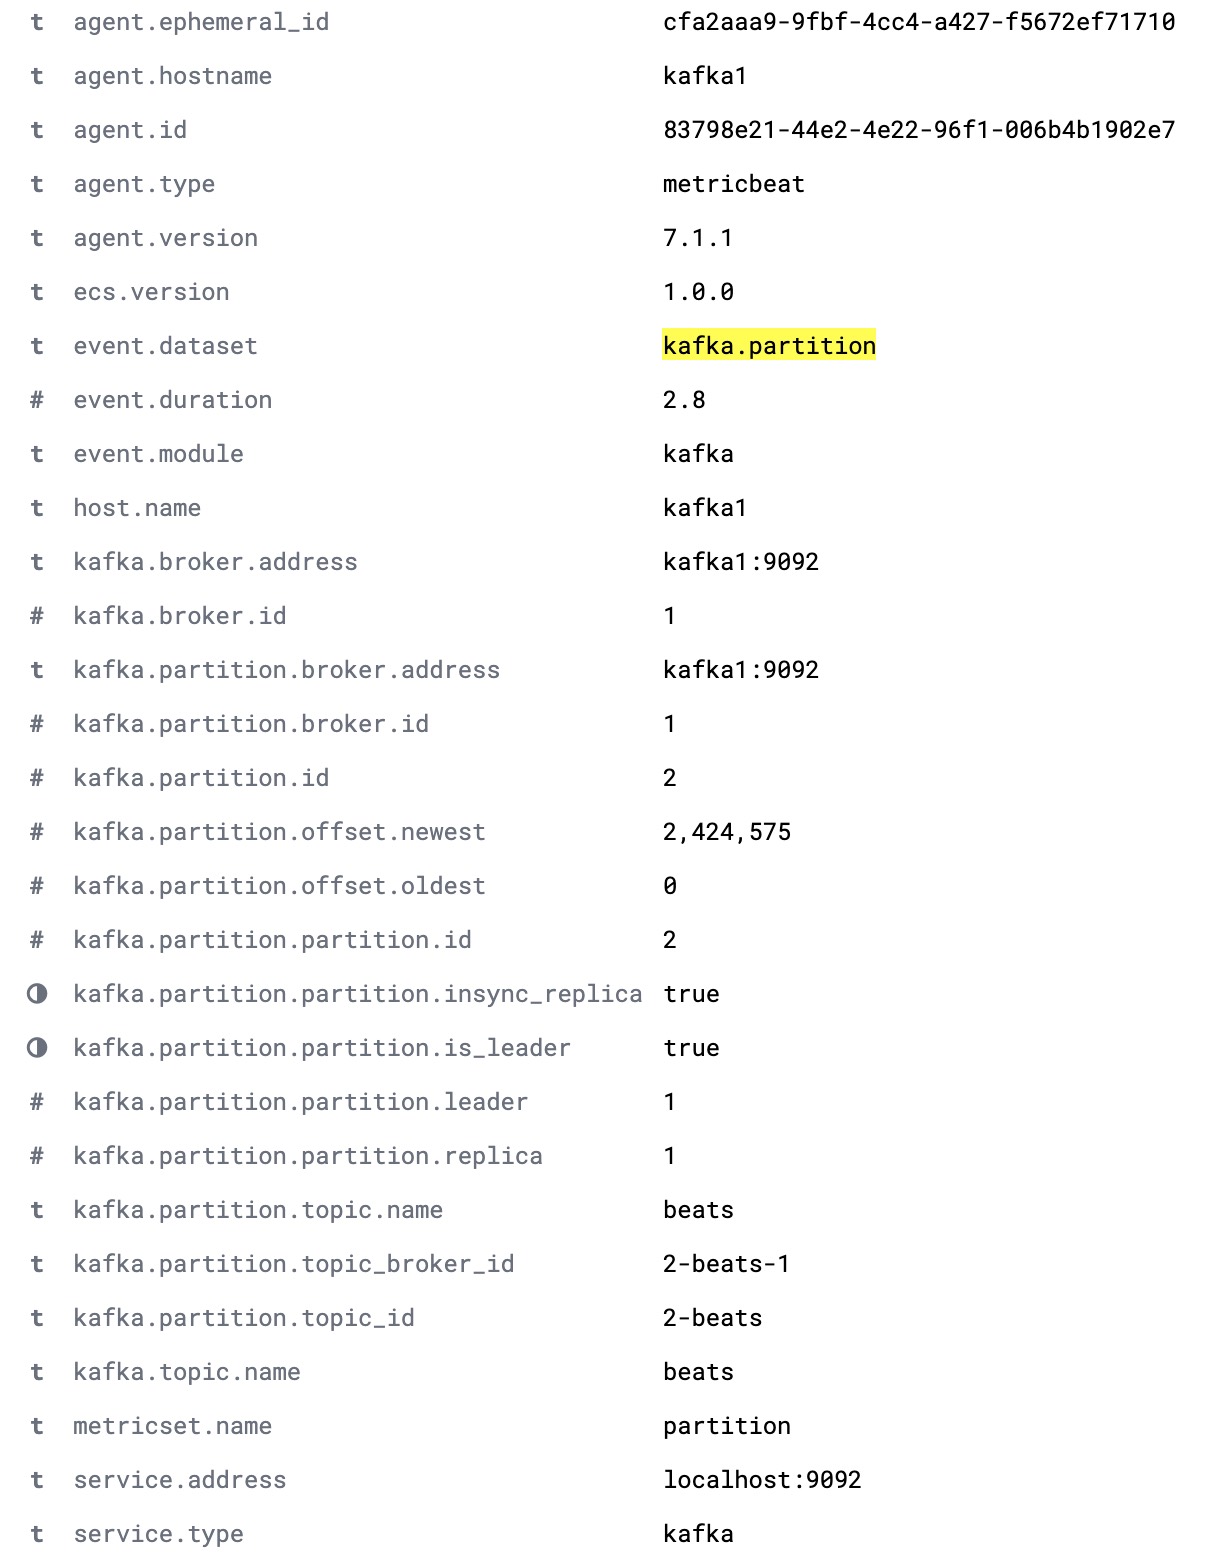 Document kafka.partition complet affichant l'intégralité des partitions d'un cluster